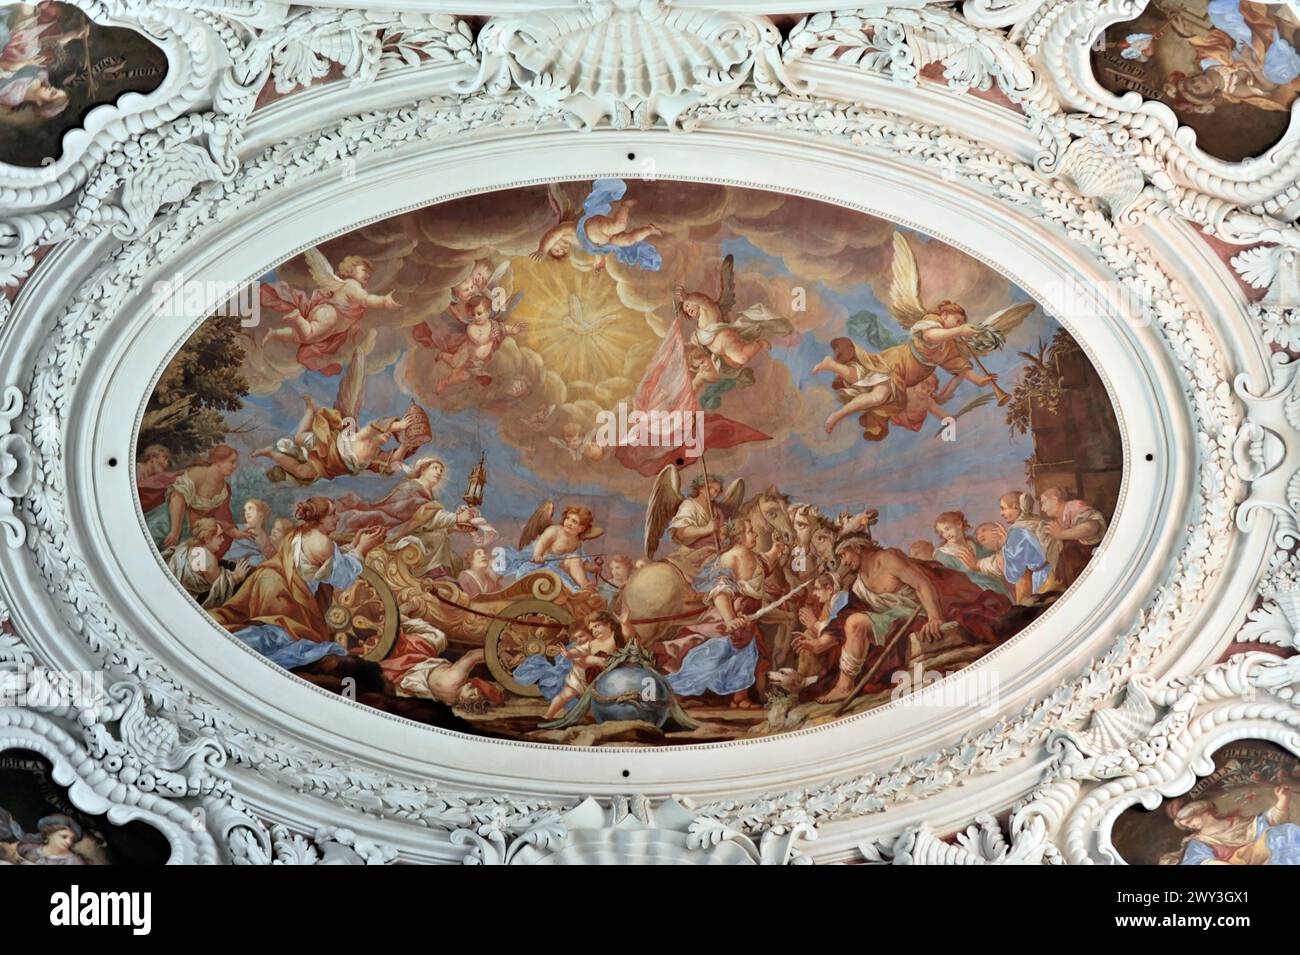 Cathédrale Saint-Étienne, Passau, peinture magistrale au plafond d'une scène religieuse dramatique entourée d'anges, cathédrale Saint-Étienne, Passau Banque D'Images